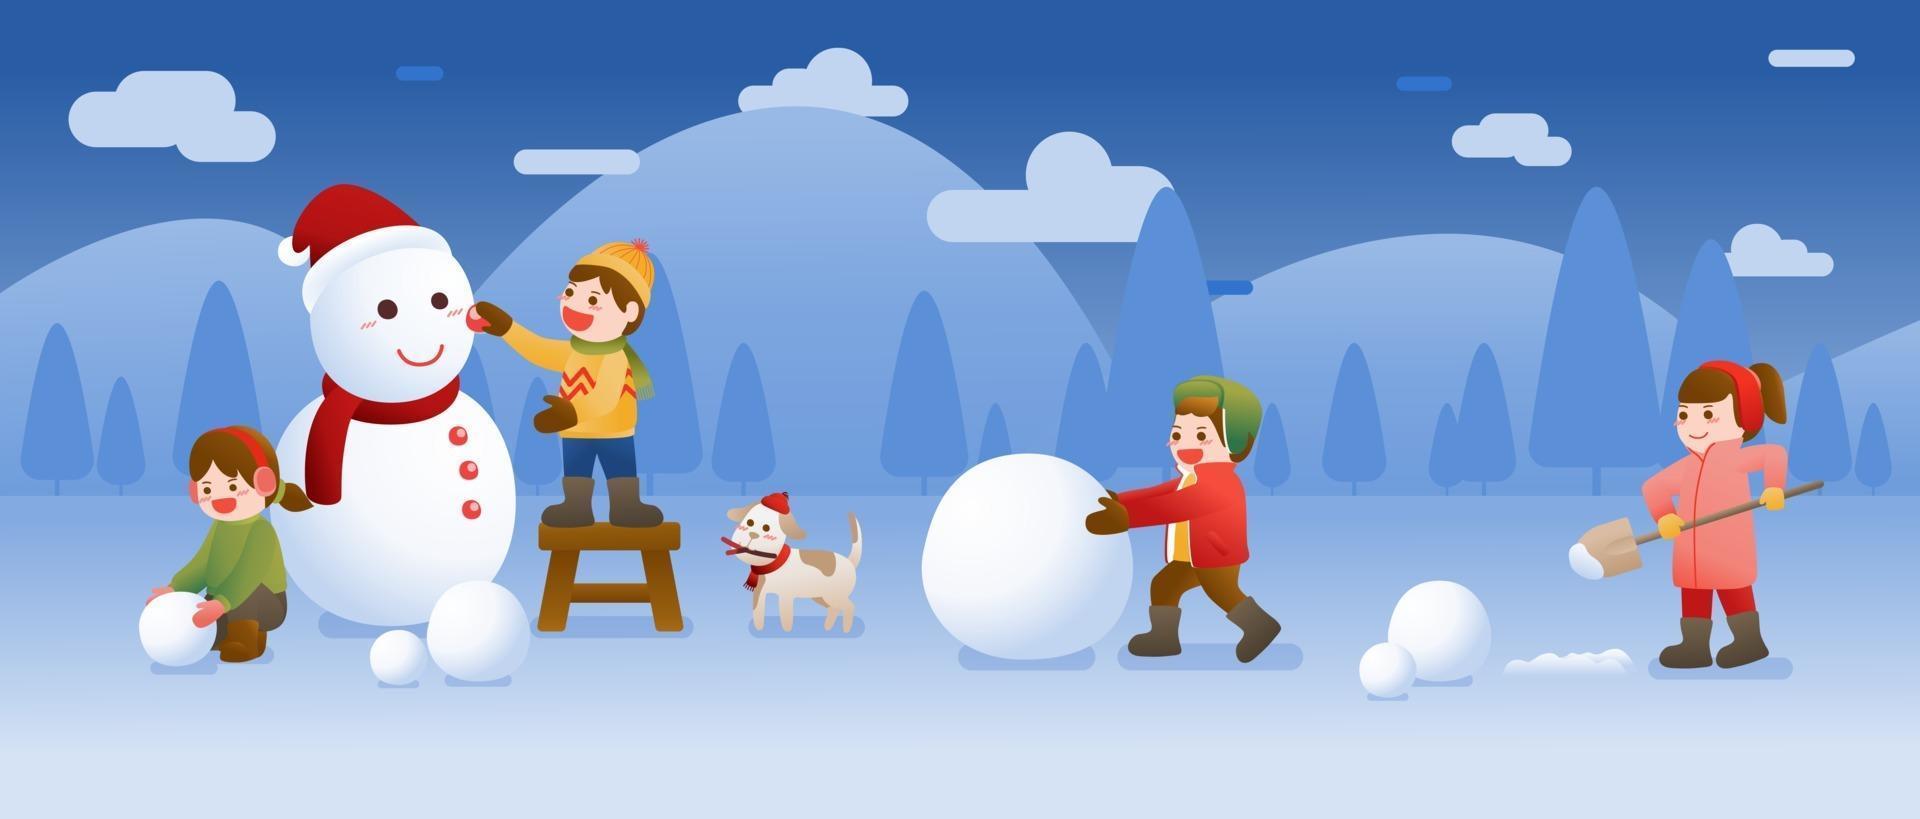 barn bygger en snögubbe och spelar snö, jul, vinter och nyårsfirande vektor